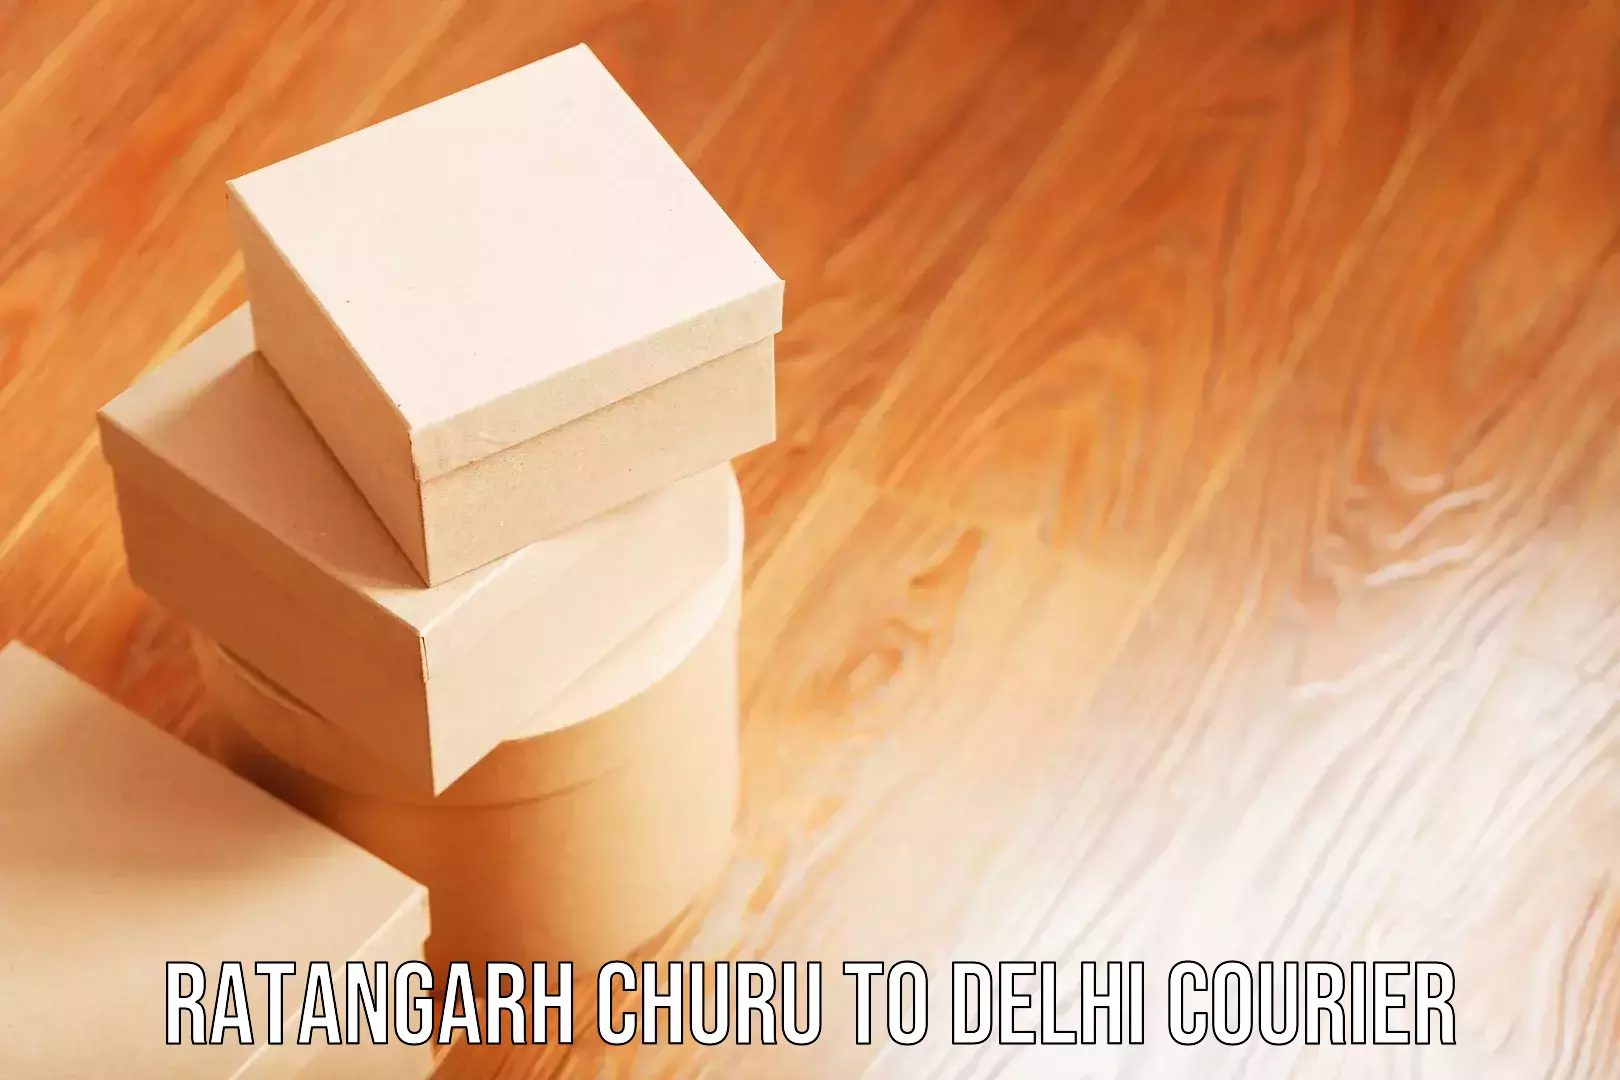 Airport luggage delivery Ratangarh Churu to Jawaharlal Nehru University New Delhi